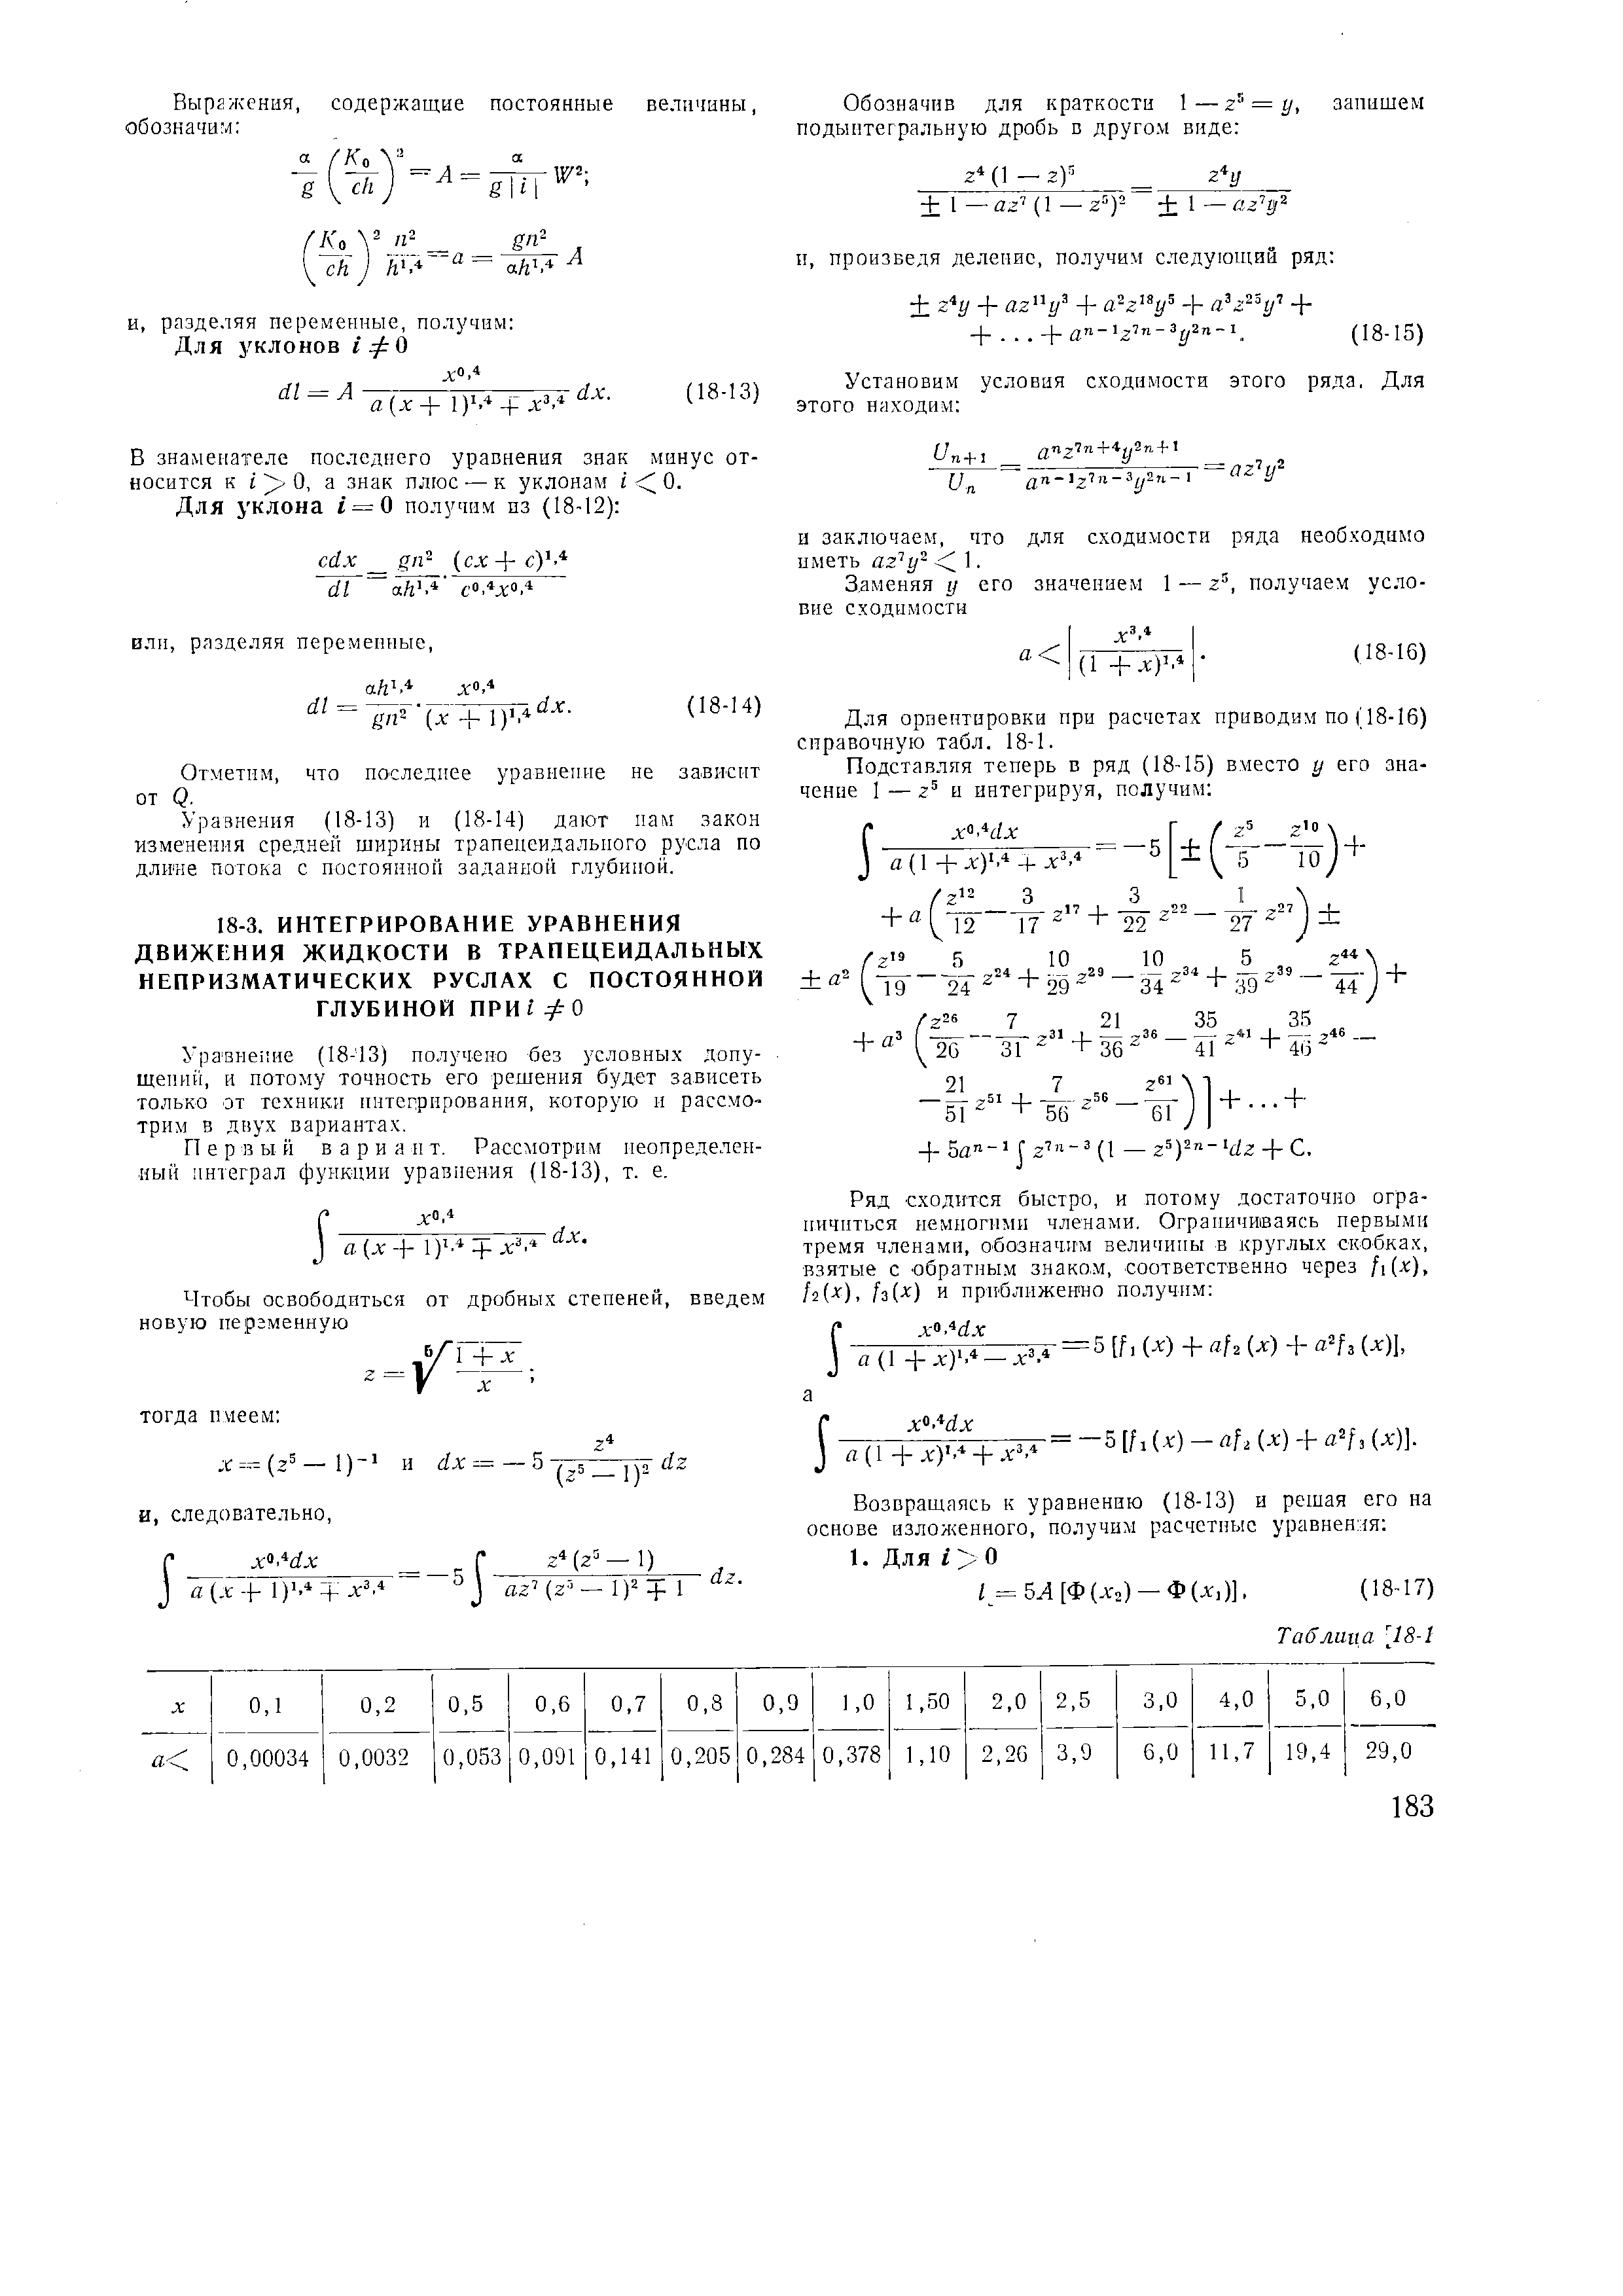 Уравнение (18-13) получено без условных допущений, и потому точность его решения будет зависеть только от техники интегрирования, которую и рассмотрим в двух вариантах.
